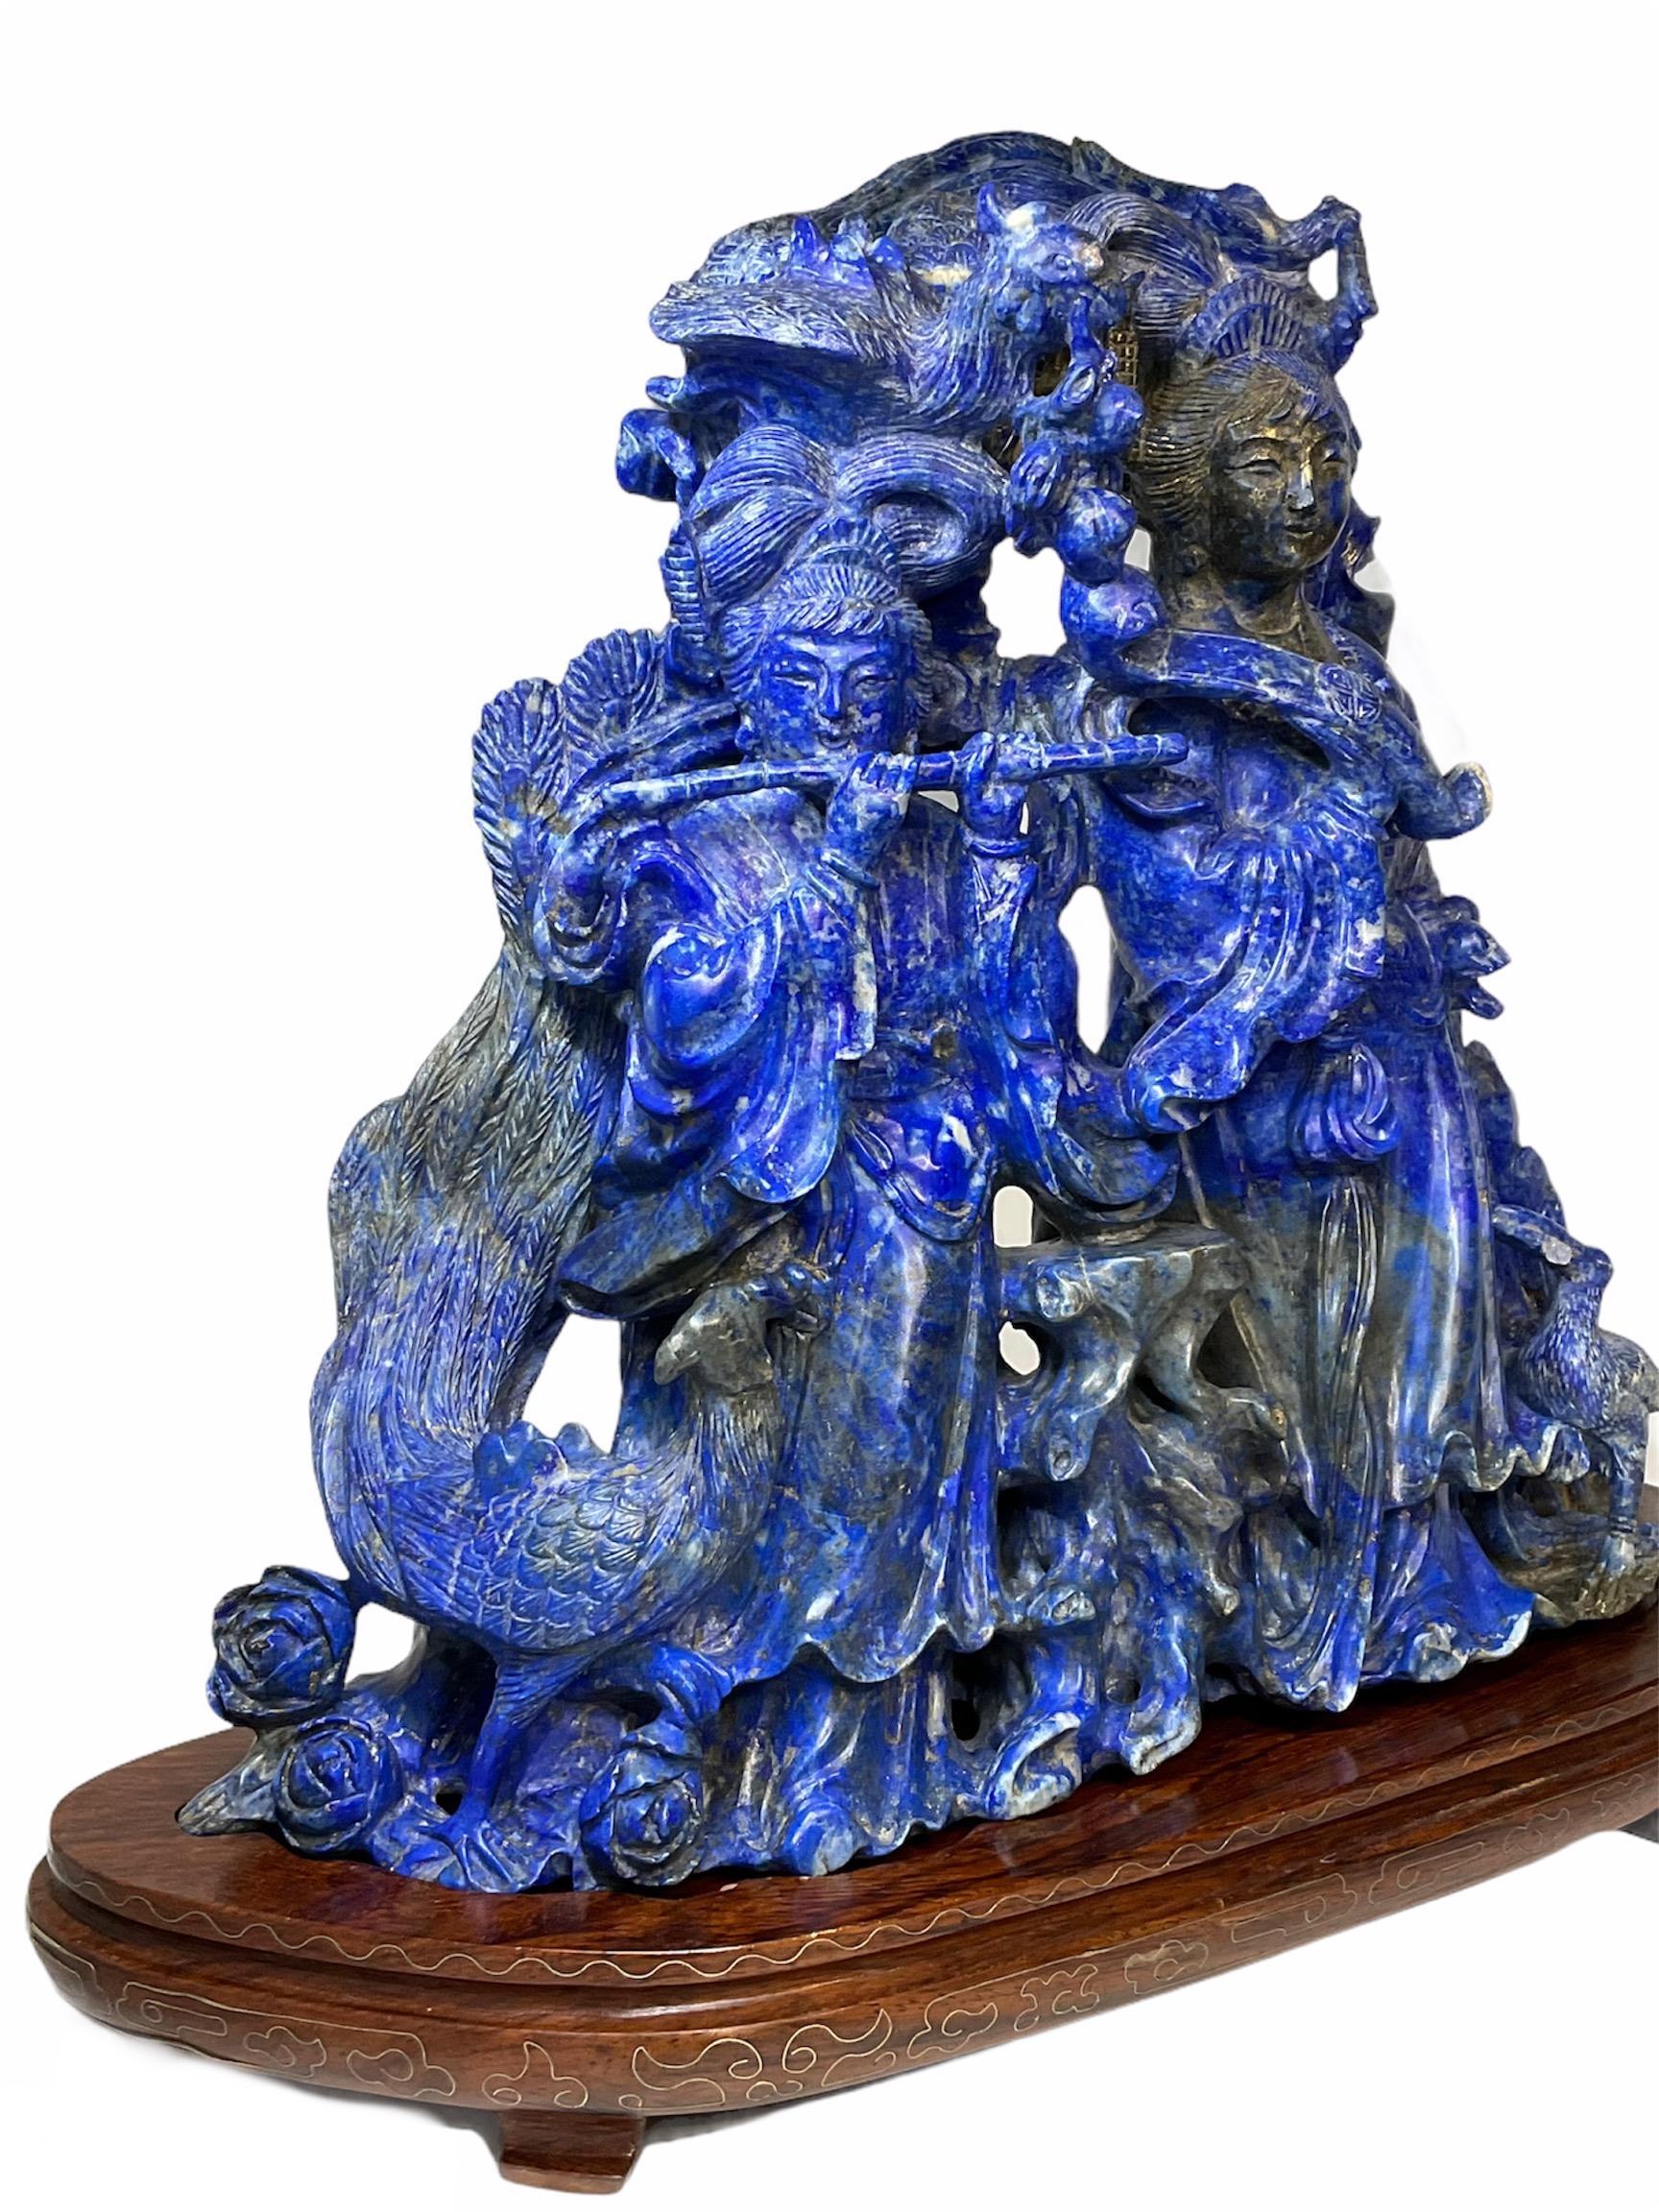 Dies ist eine große schwere chinesische Lapislazuli gut in Details geschnitzt Gruppe von Figuren Skulptur. Es zeigt zwei junge Damen sehr gut in südlichen und nördlichen Dynastie Kleidung mit traditionellen chinesischen Frisuren stehen zwischen